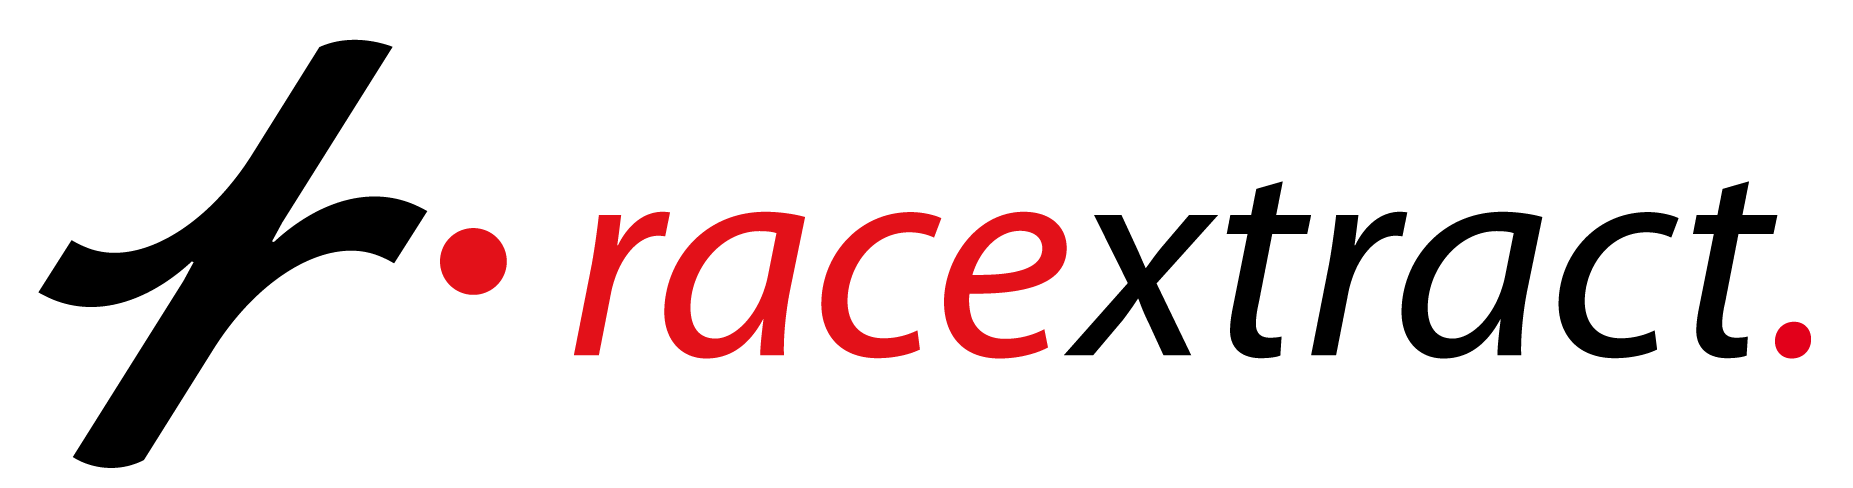 Racextract Logo Hor Sr 01